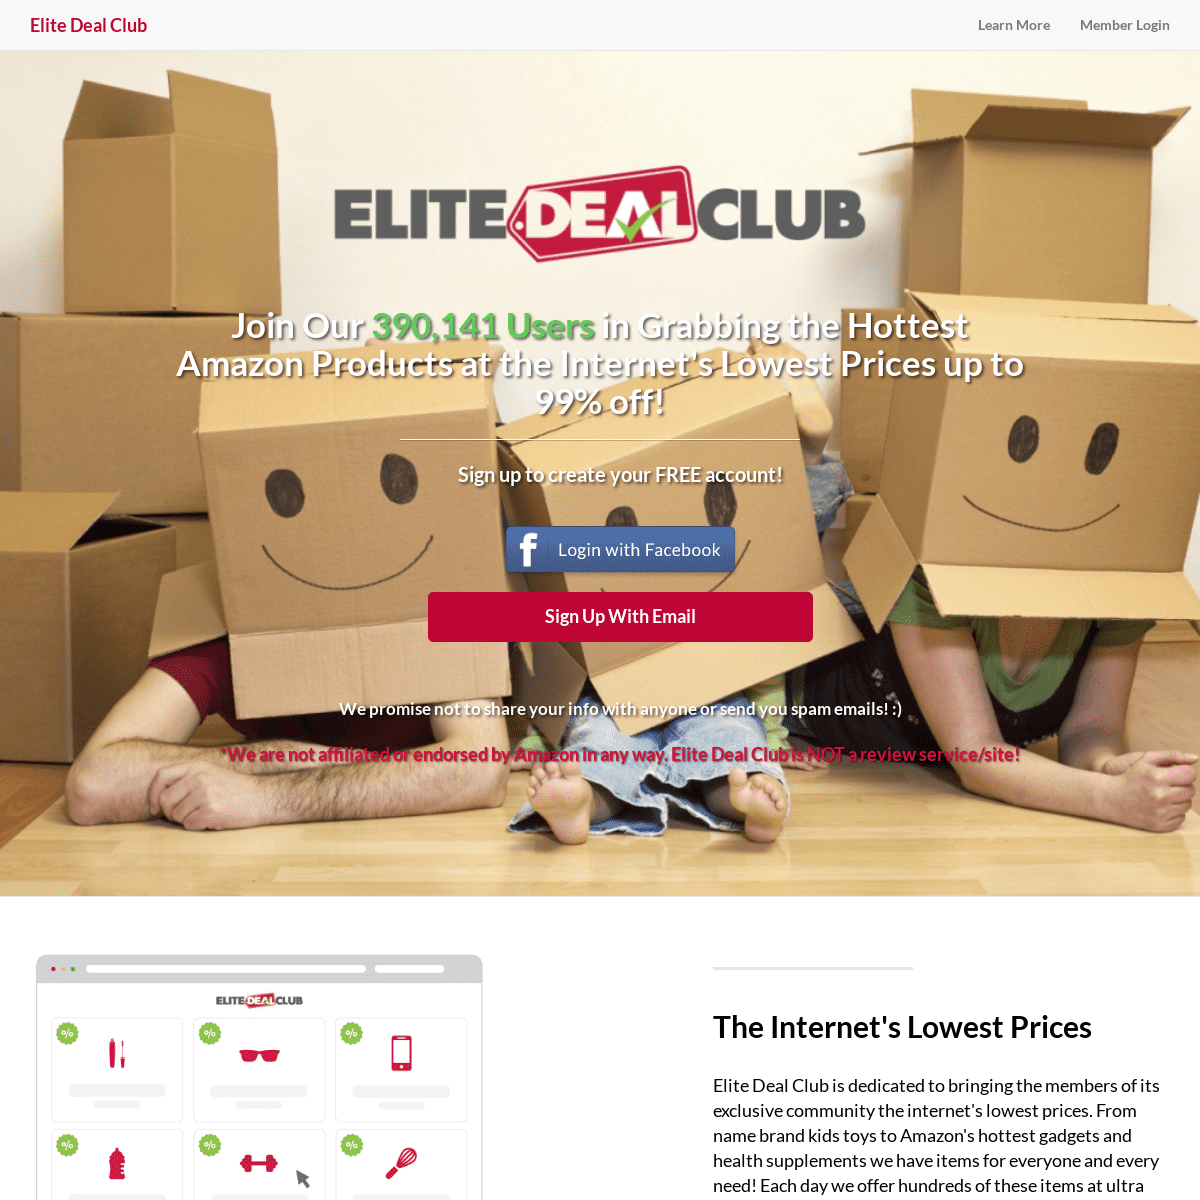 A complete backup of elitedealclub.com